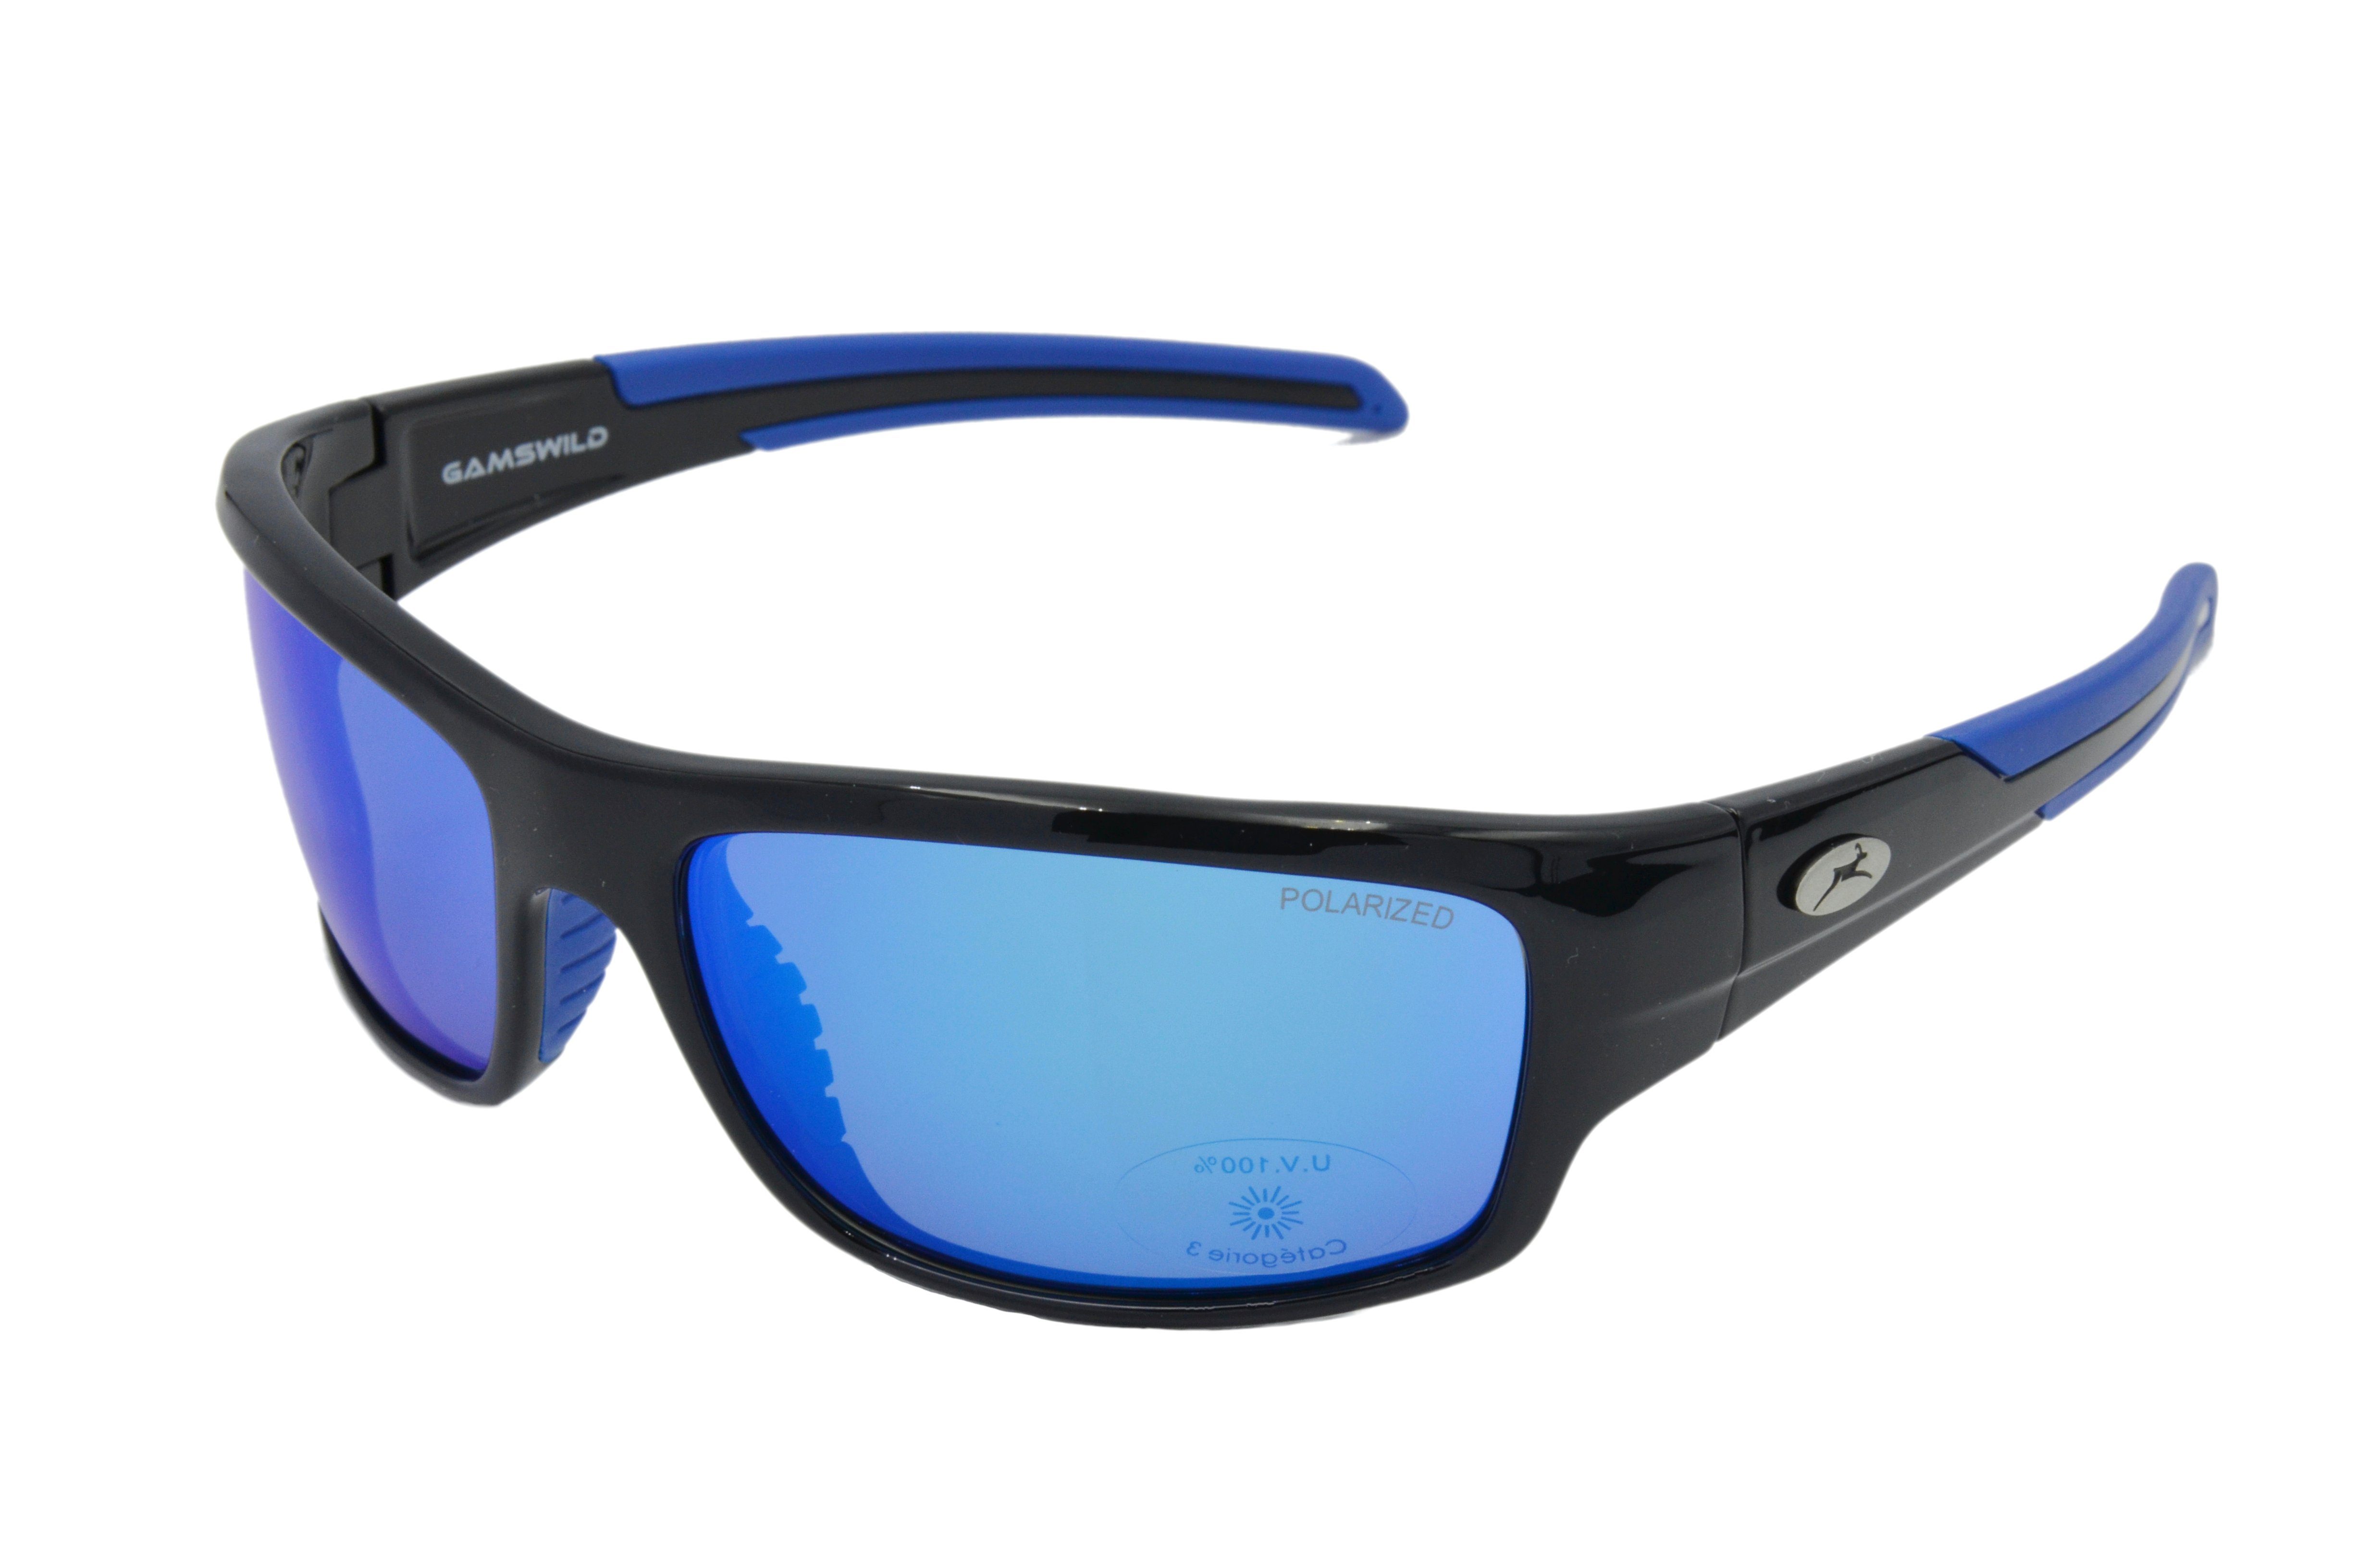 Gamswild Sportbrille WS6034 Sportbrille Sonnenbrille Fahrradbrille Skibrille  Damen Herren, polarisierte Gläser, grün-türkis, blau, grau, schwarz, braun